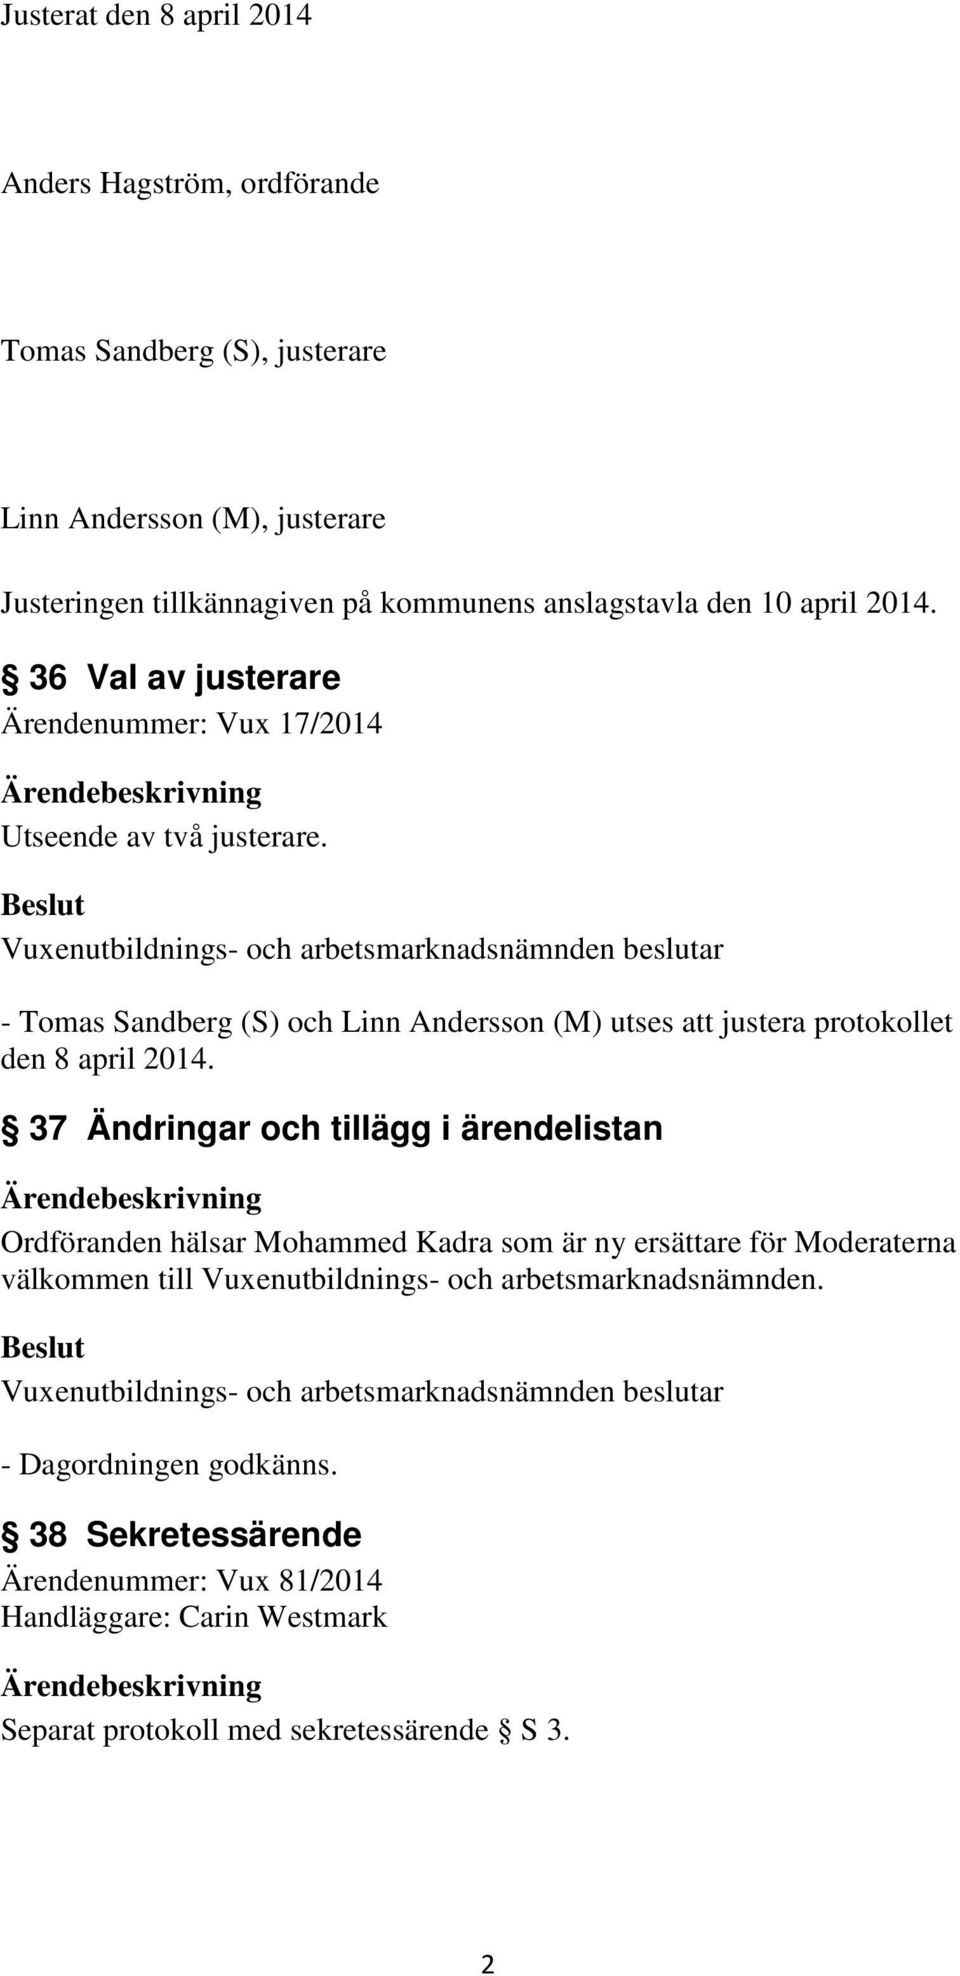 - Tomas Sandberg (S) och Linn Andersson (M) utses att justera protokollet den 8 april 2014.